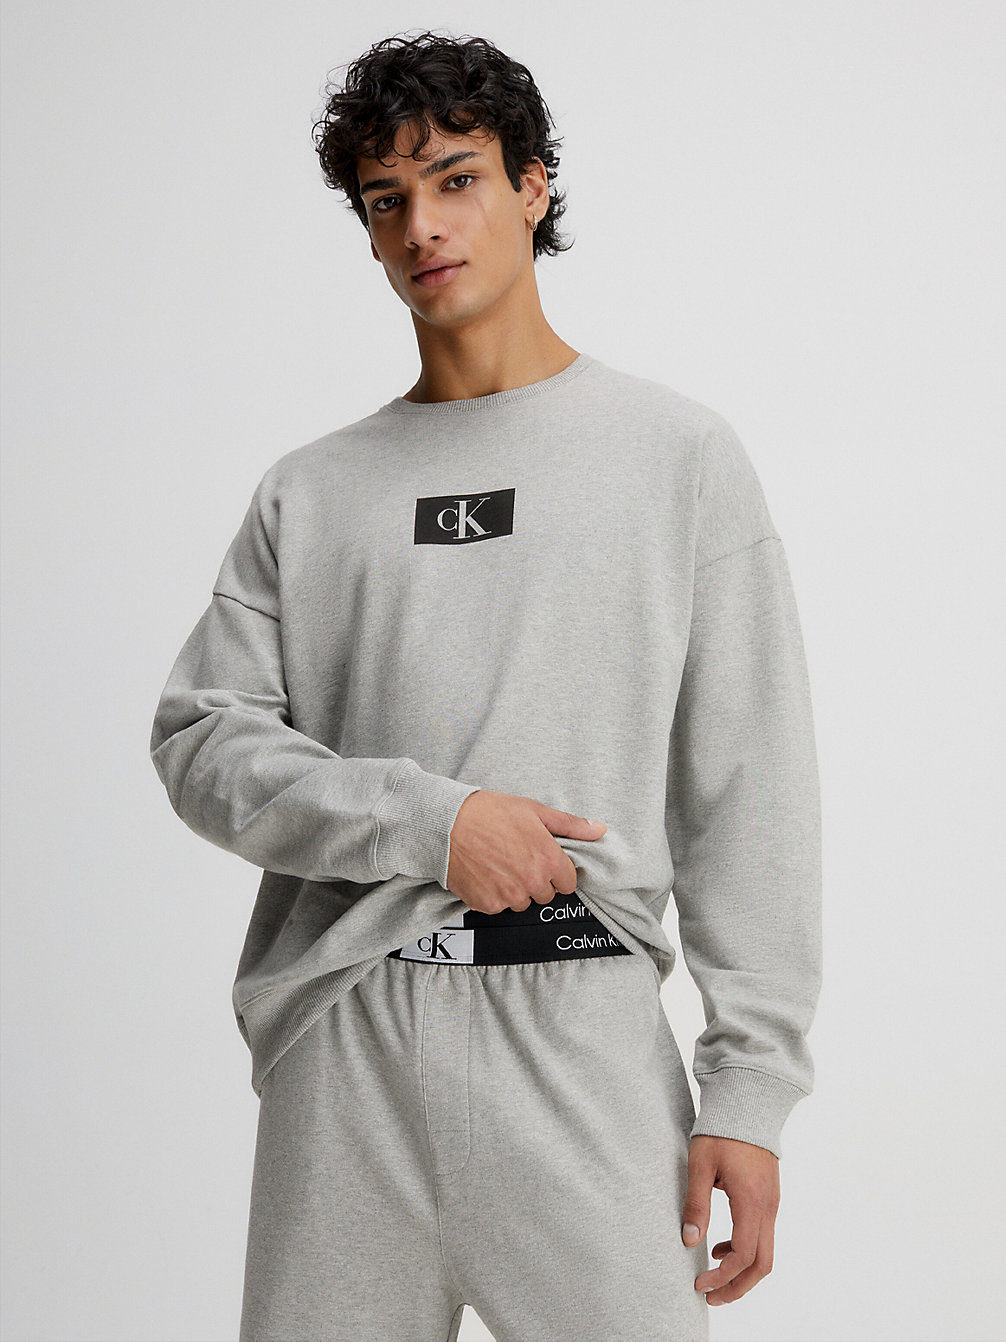 GREY HEATHER Lounge-Sweatshirt - Ck96 undefined Herren Calvin Klein